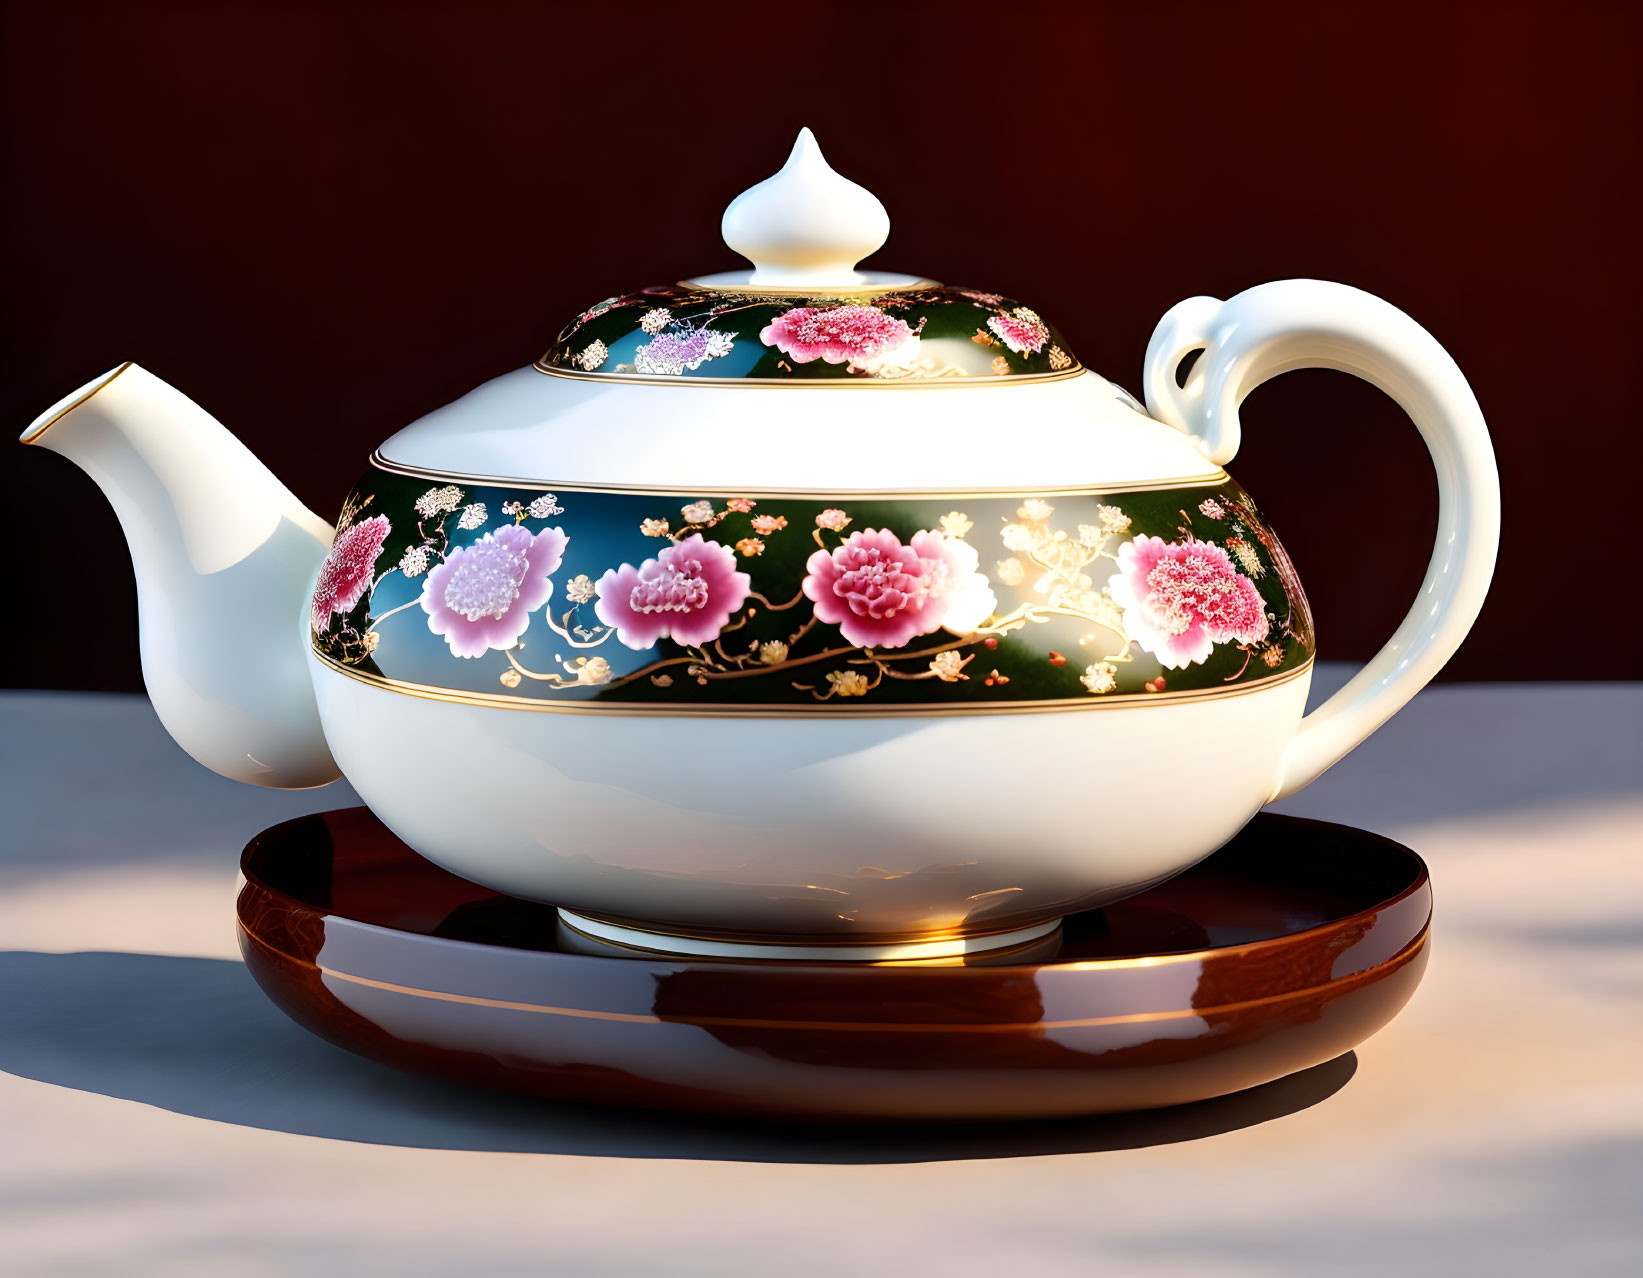 A delicate porcelain teapot